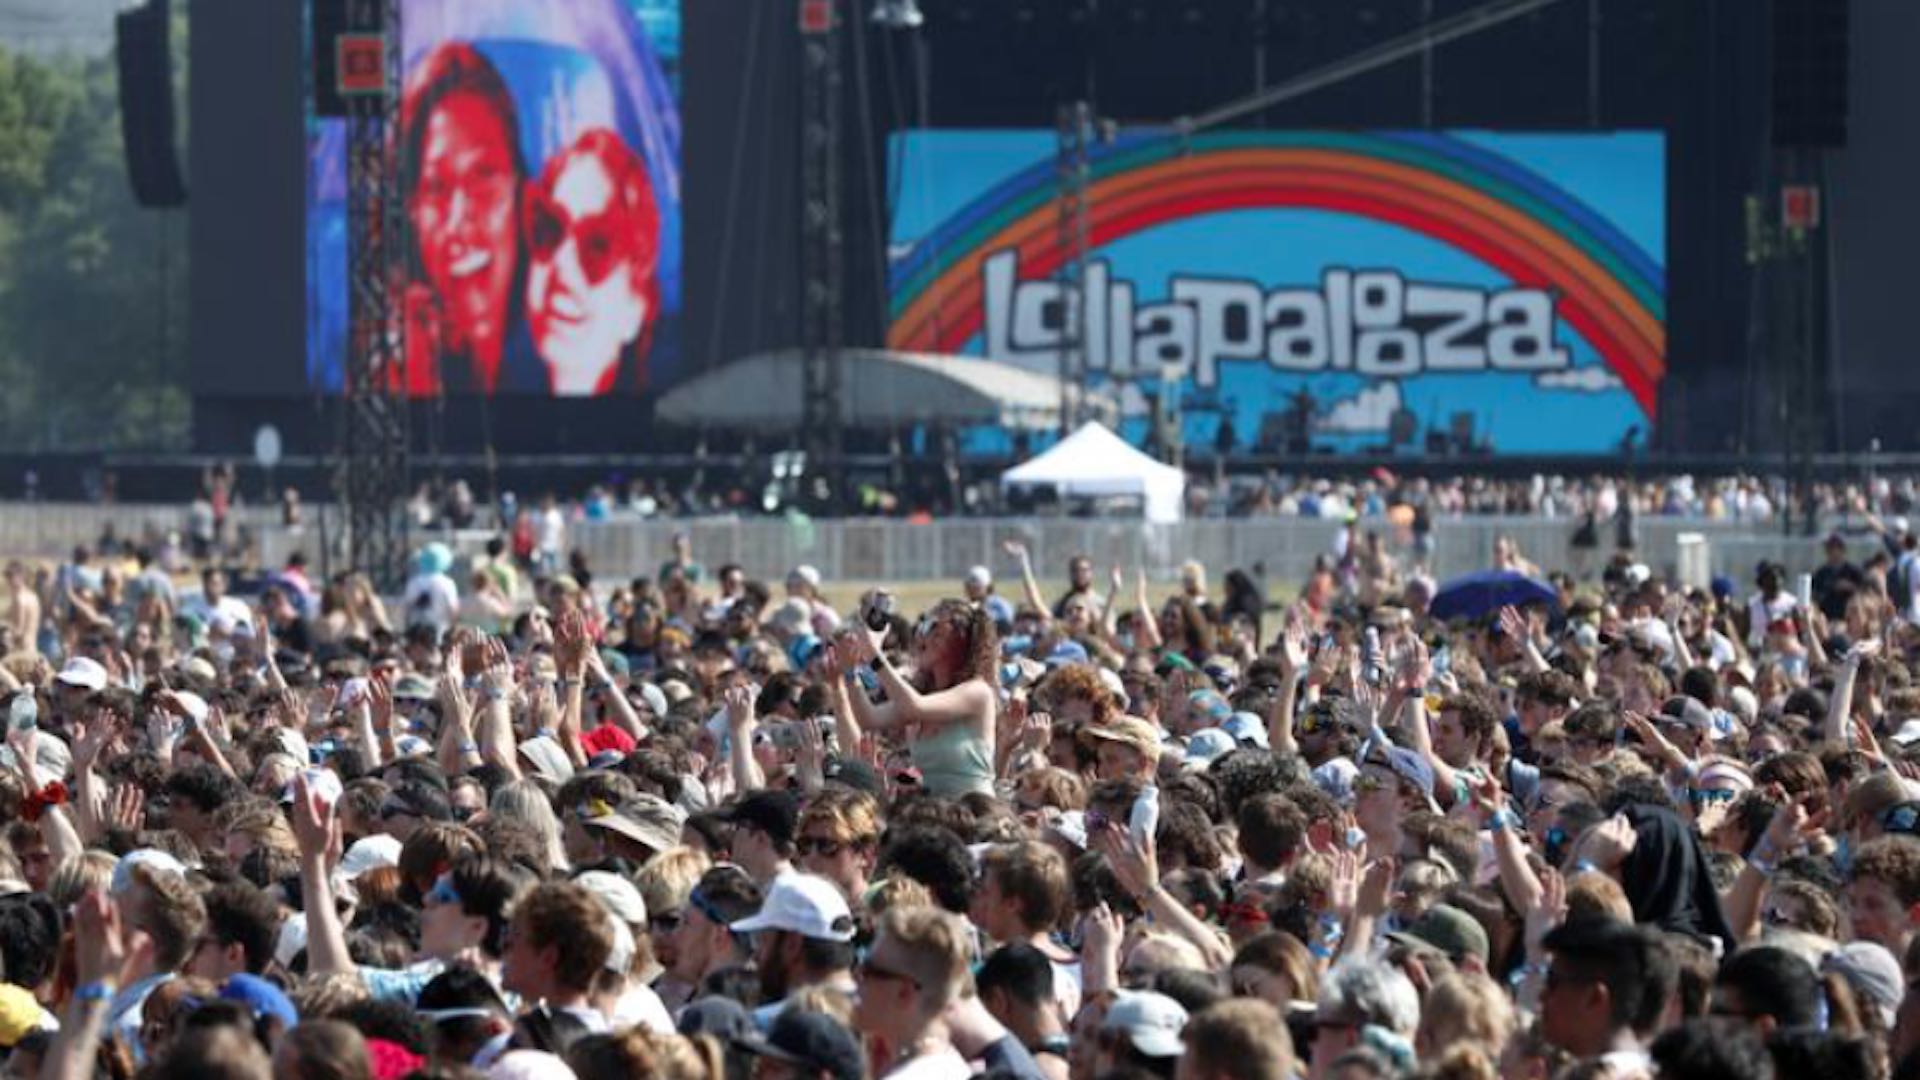 #MañanasX: Solo 203 personas han dado positivo para Covid-19 después del Festival Lollapalooza Chicago